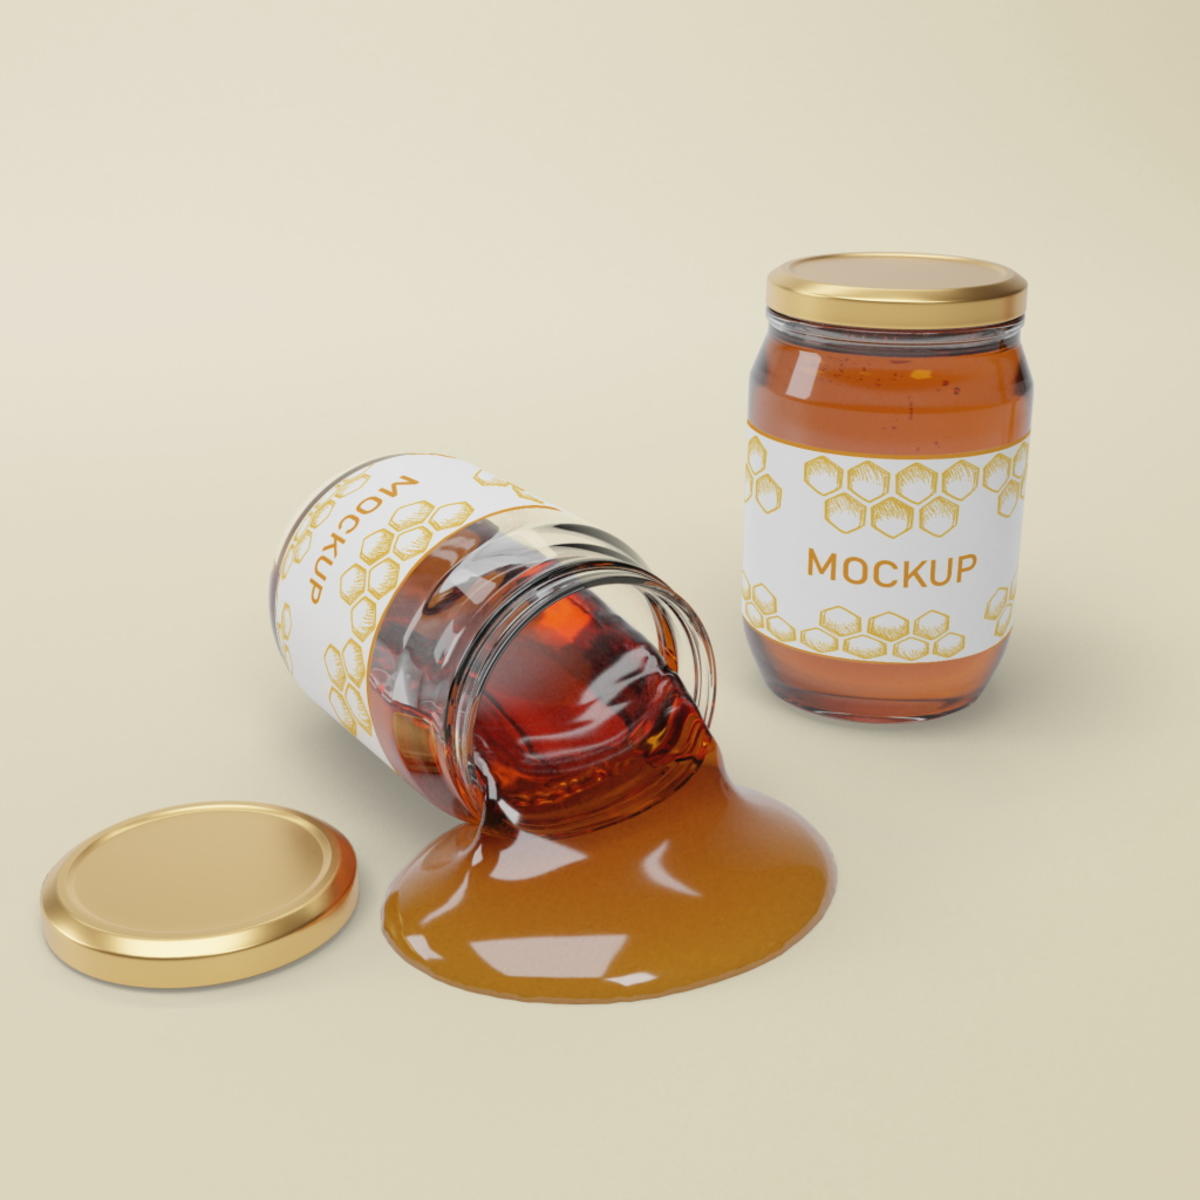 密封玻璃瓶蜂蜜包装贴图样机psd素材